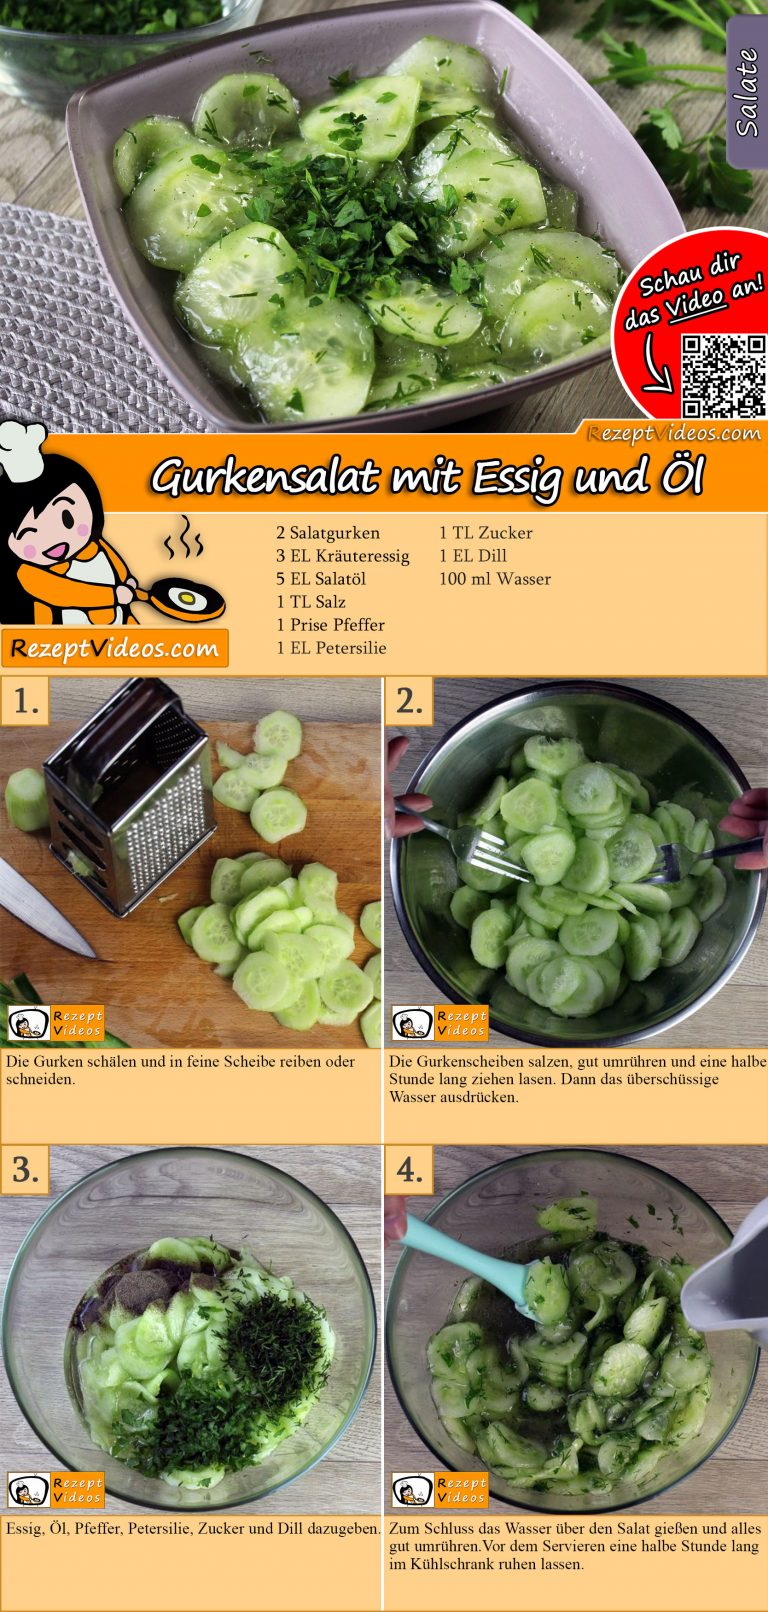 Gurkensalat mit Essig und Öl Rezept mit Video - Salat Rezepte mit Video